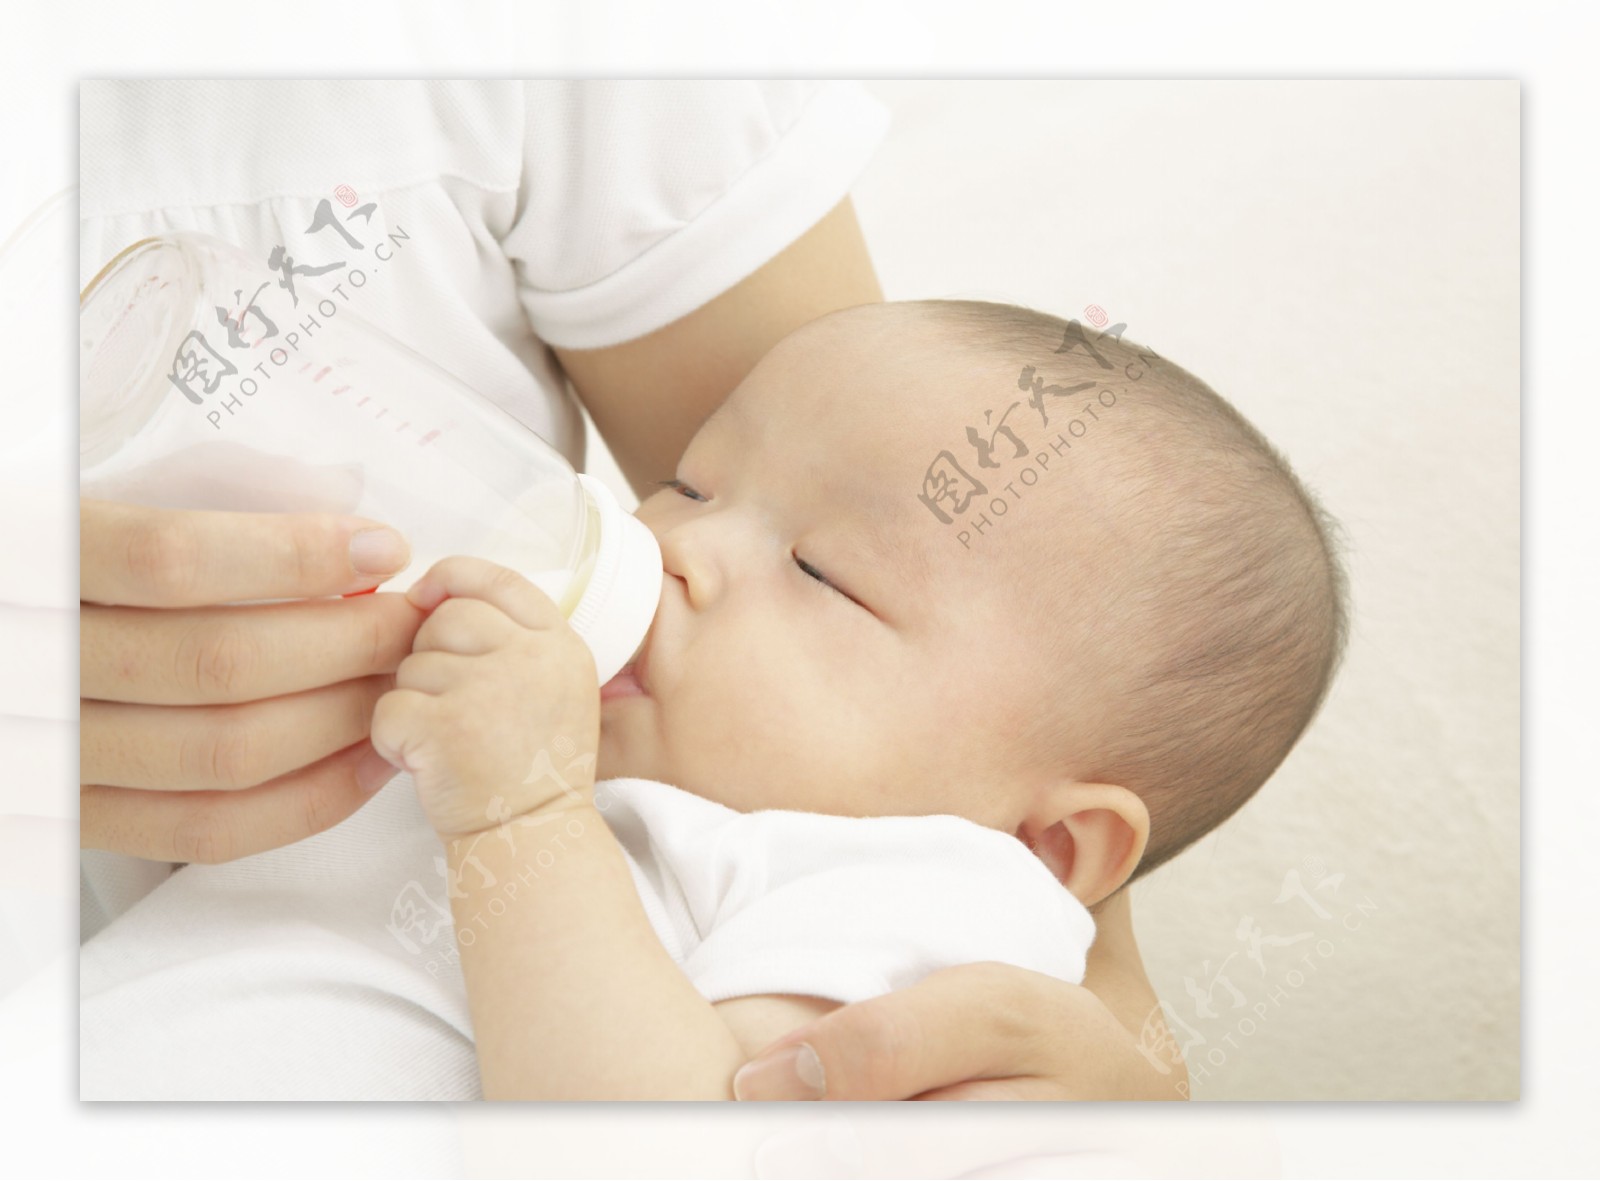 喝奶粉的可爱小宝宝图片